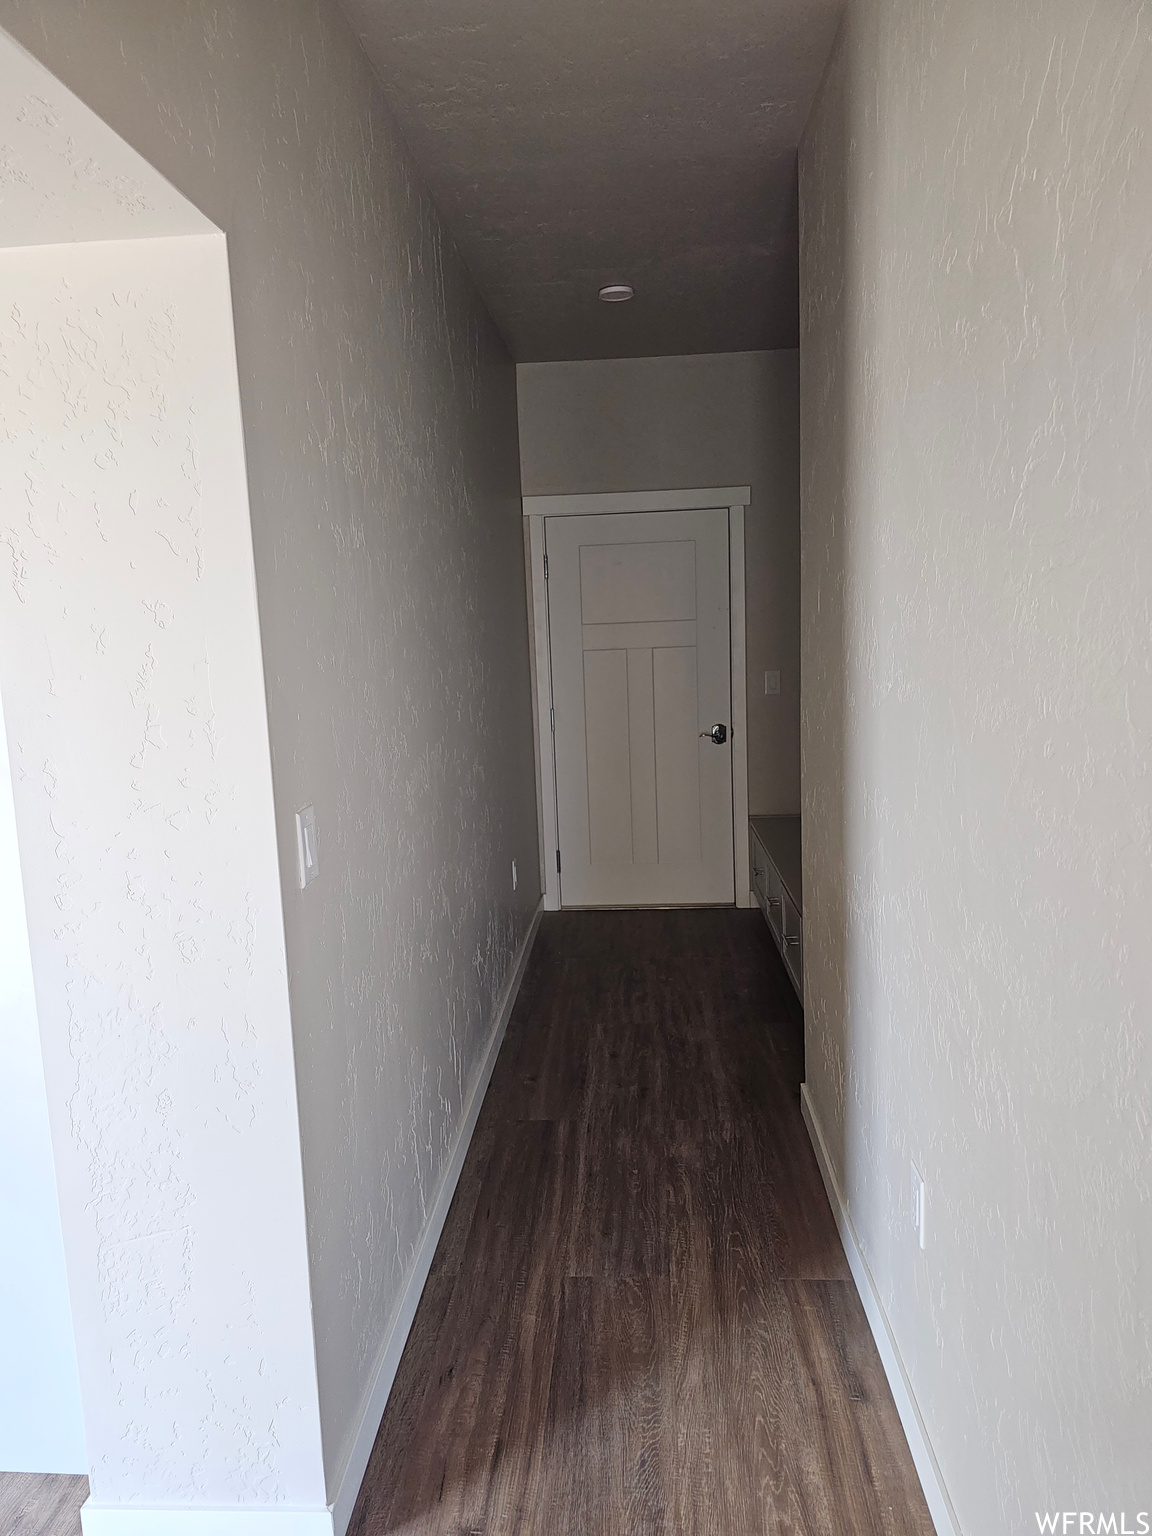 Hallway with dark parquet floors